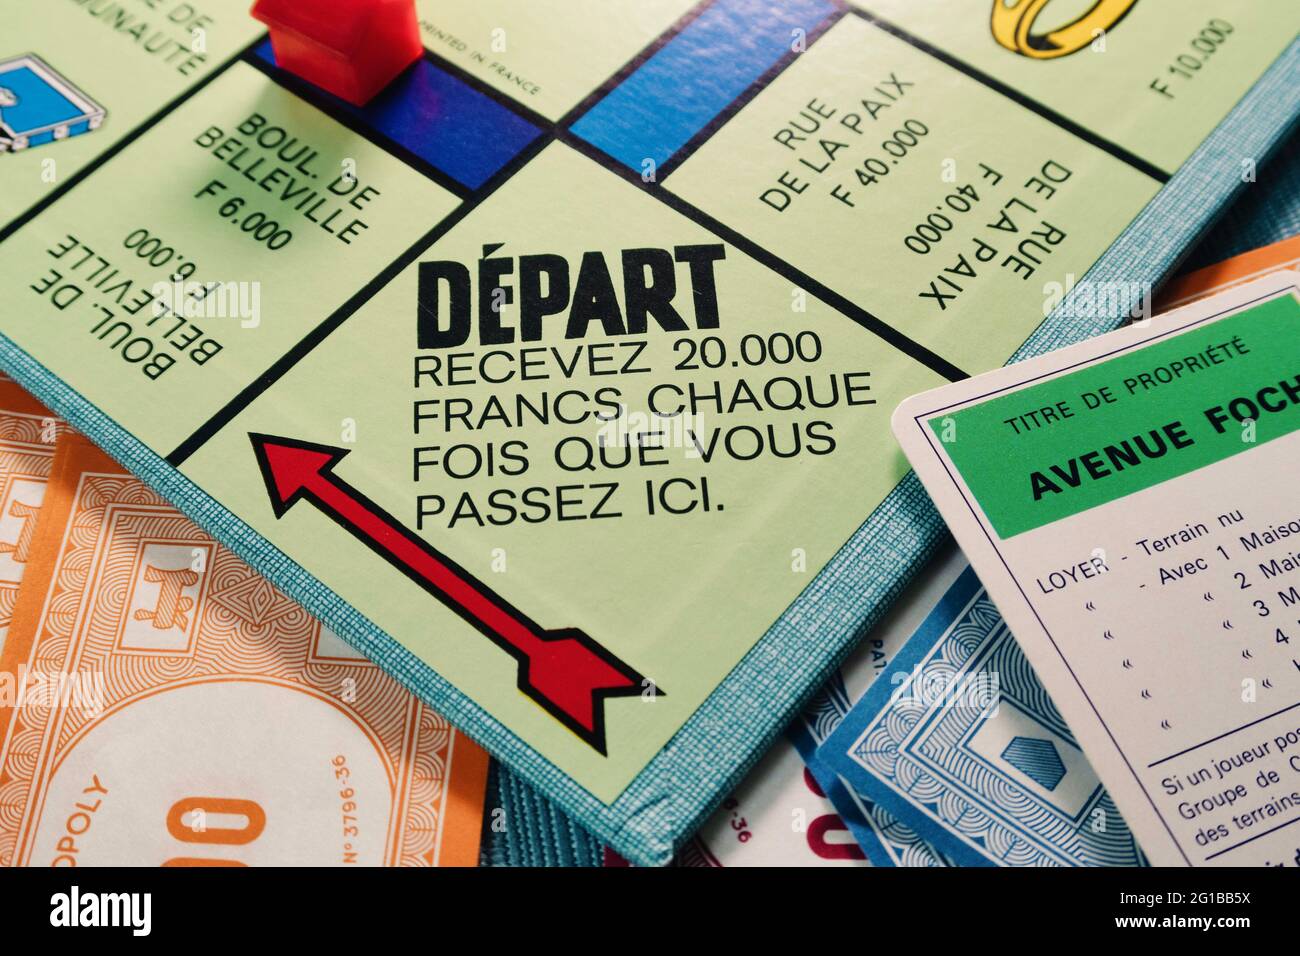 Version française du jeu de société Monopoly. Banque D'Images